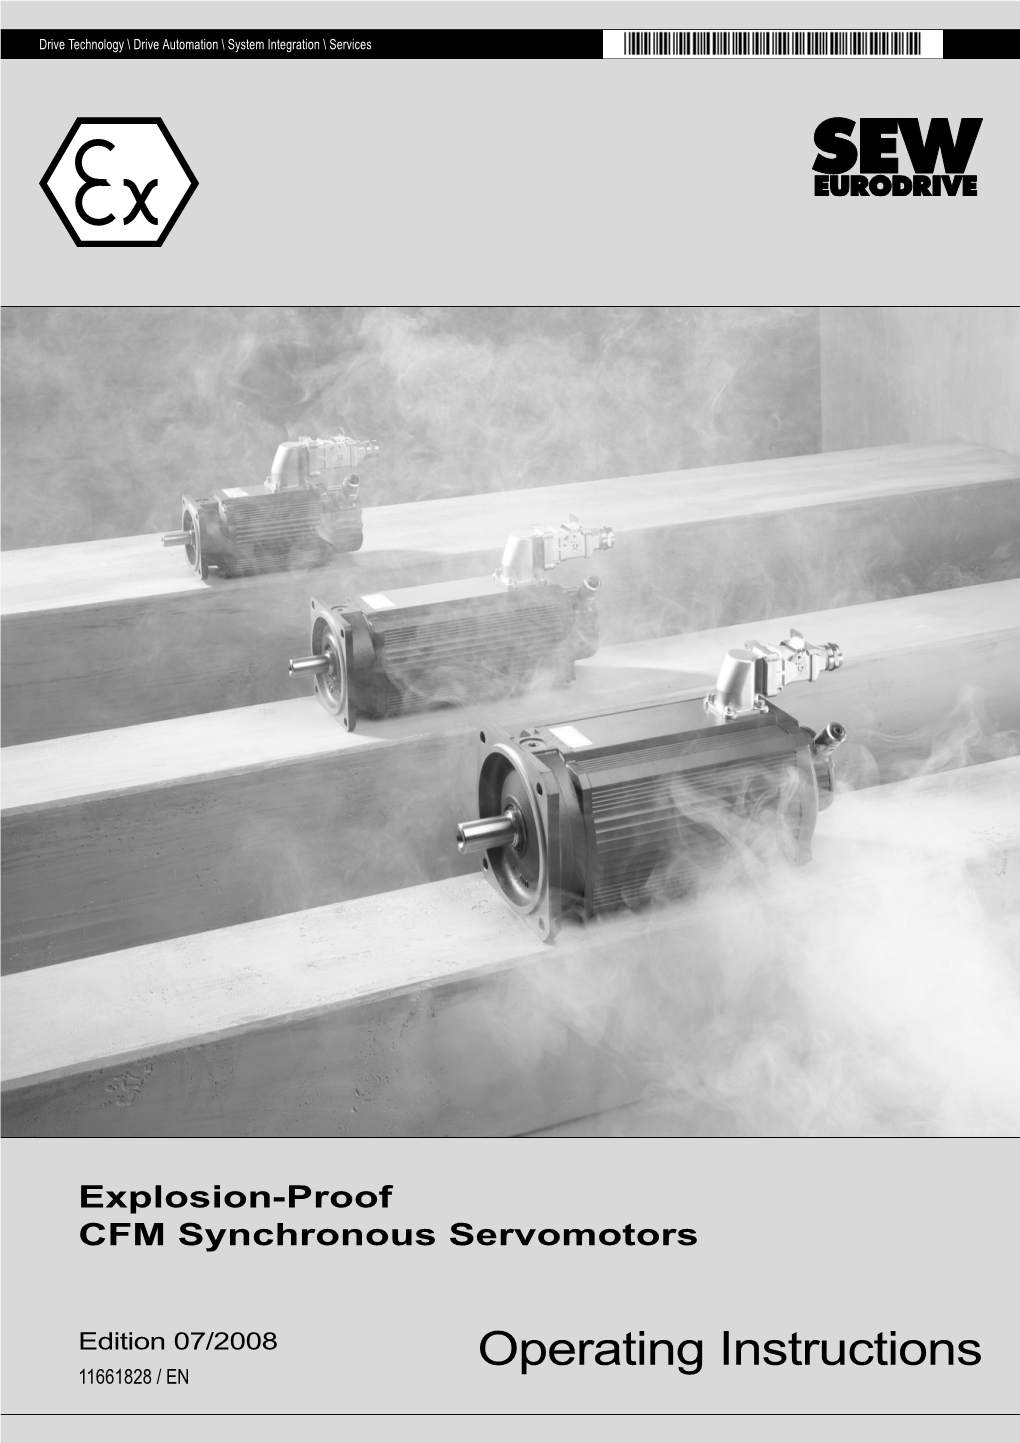 Explosion-Proof CFM Synchronous Servomotors